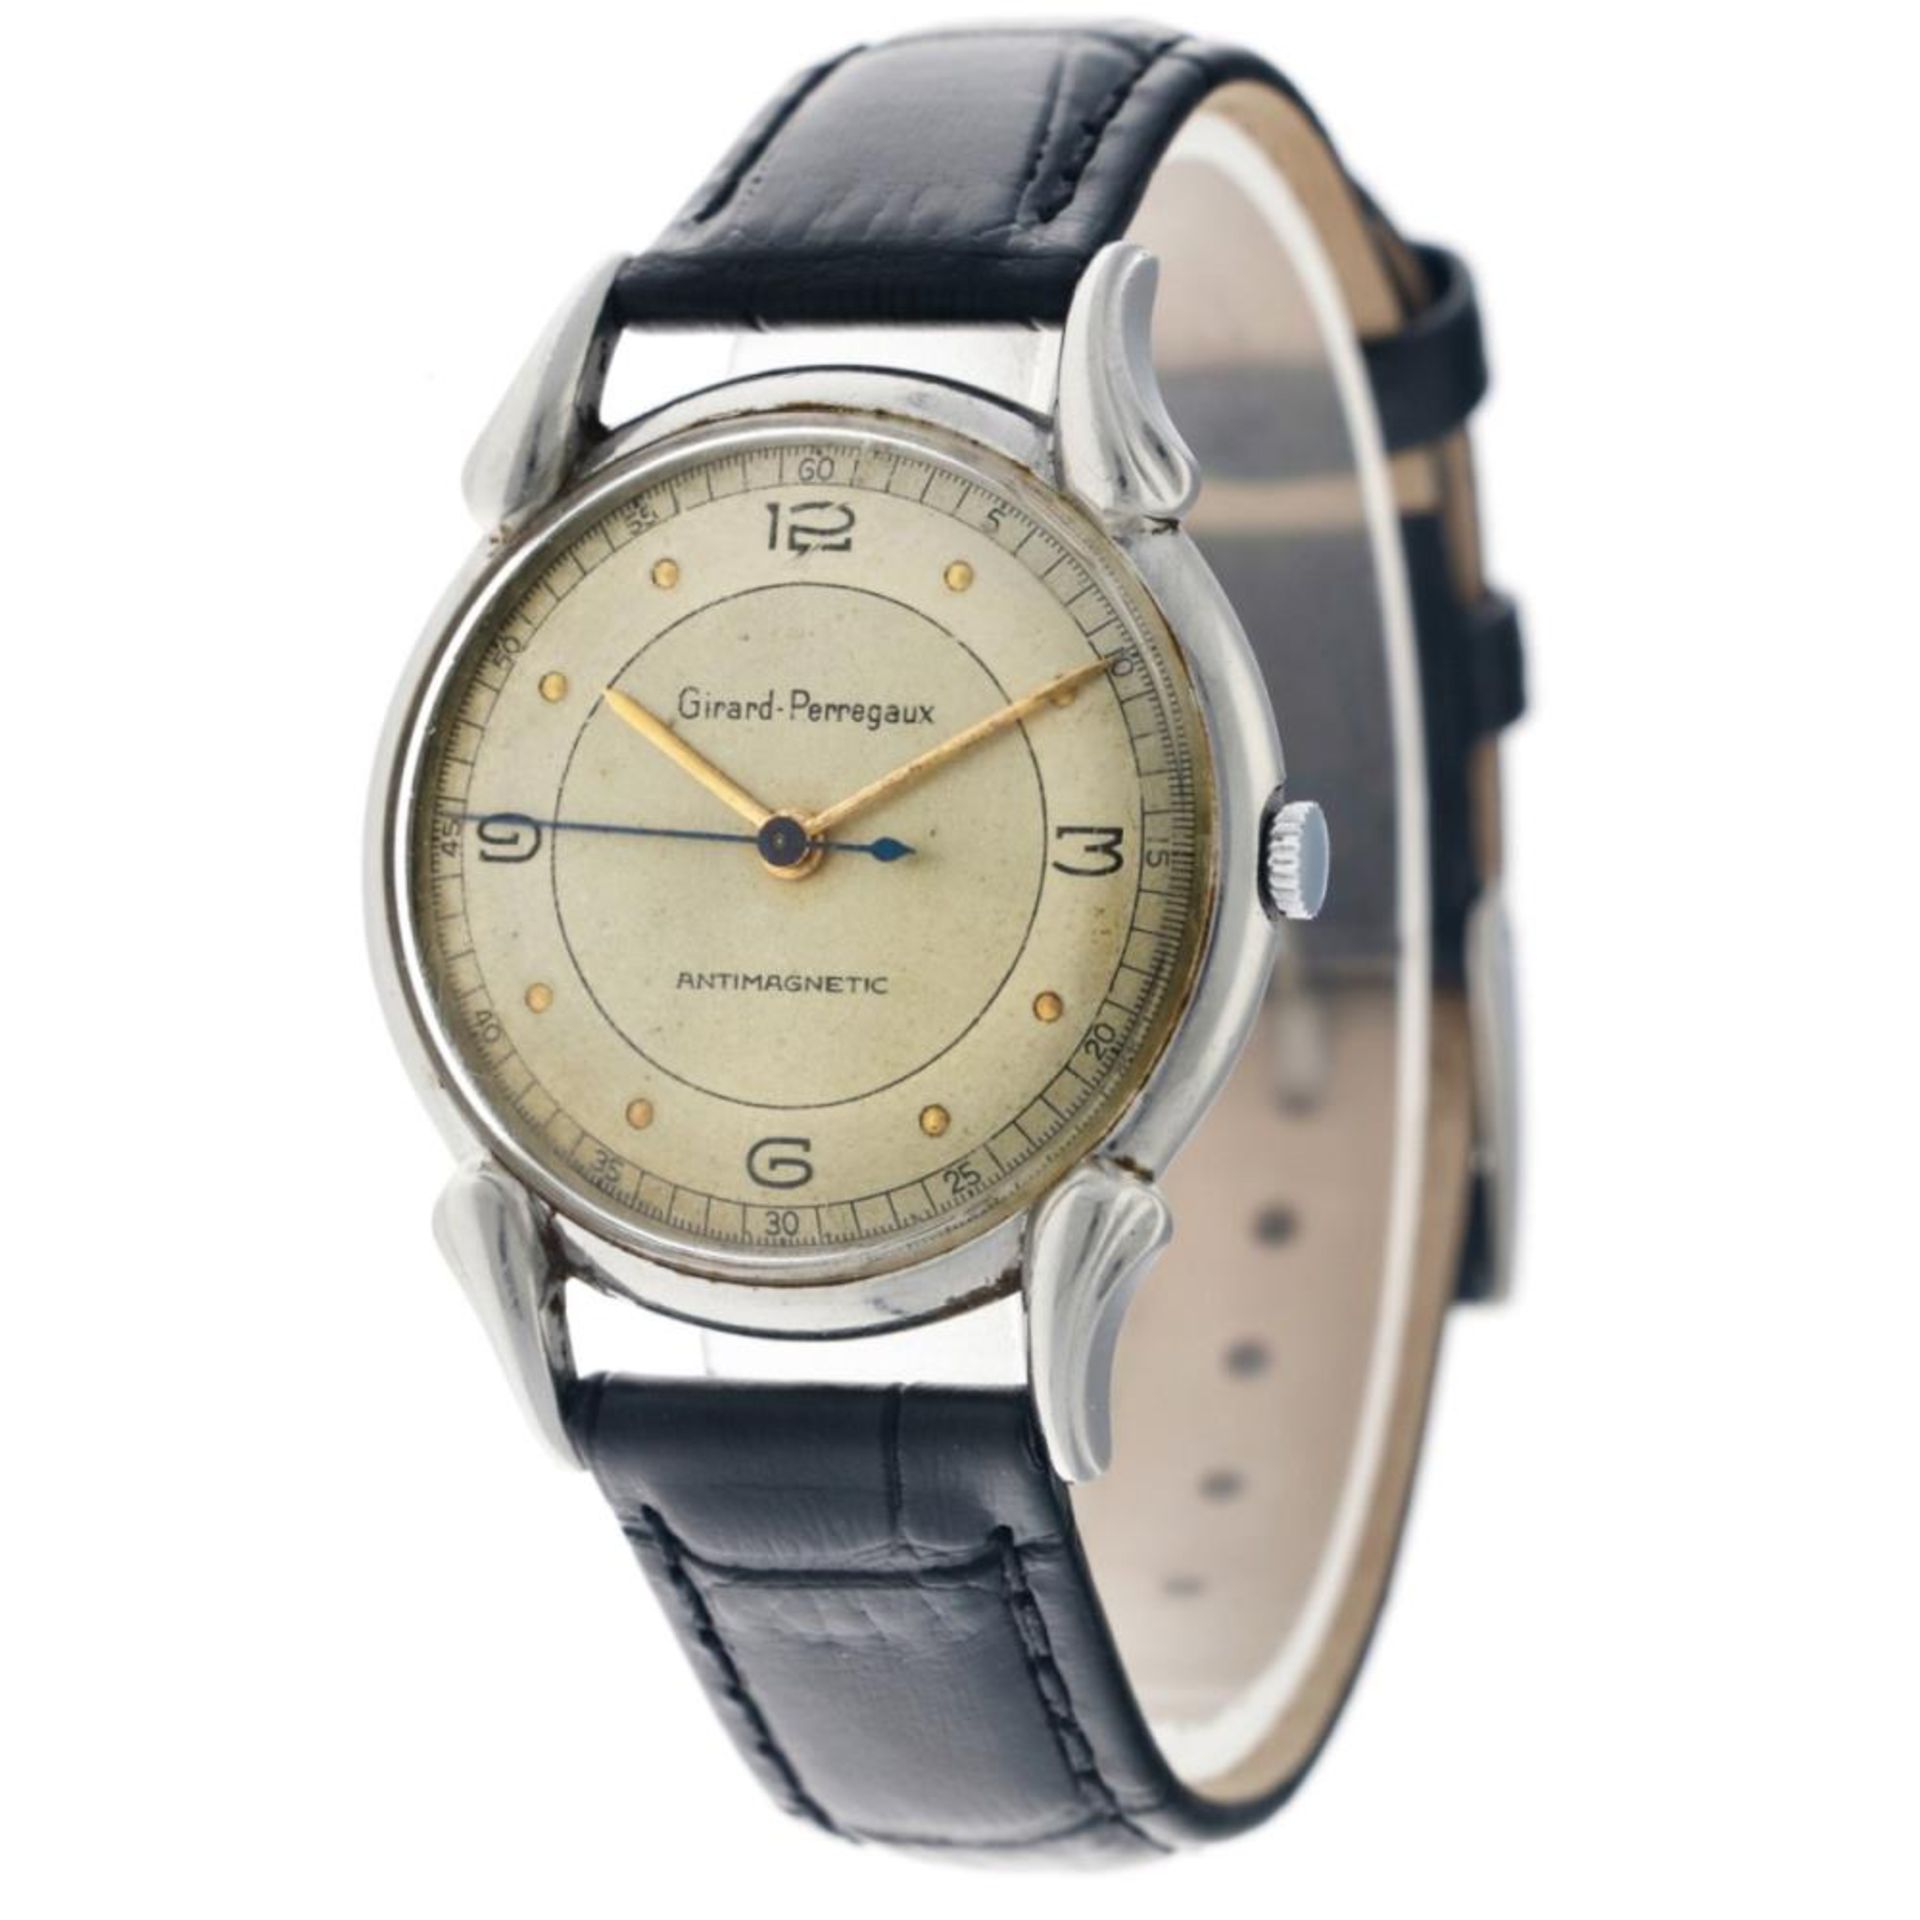 Girard-Perregaux Dogleg 494779 - Men's watch - approx. 1950. - Image 4 of 14